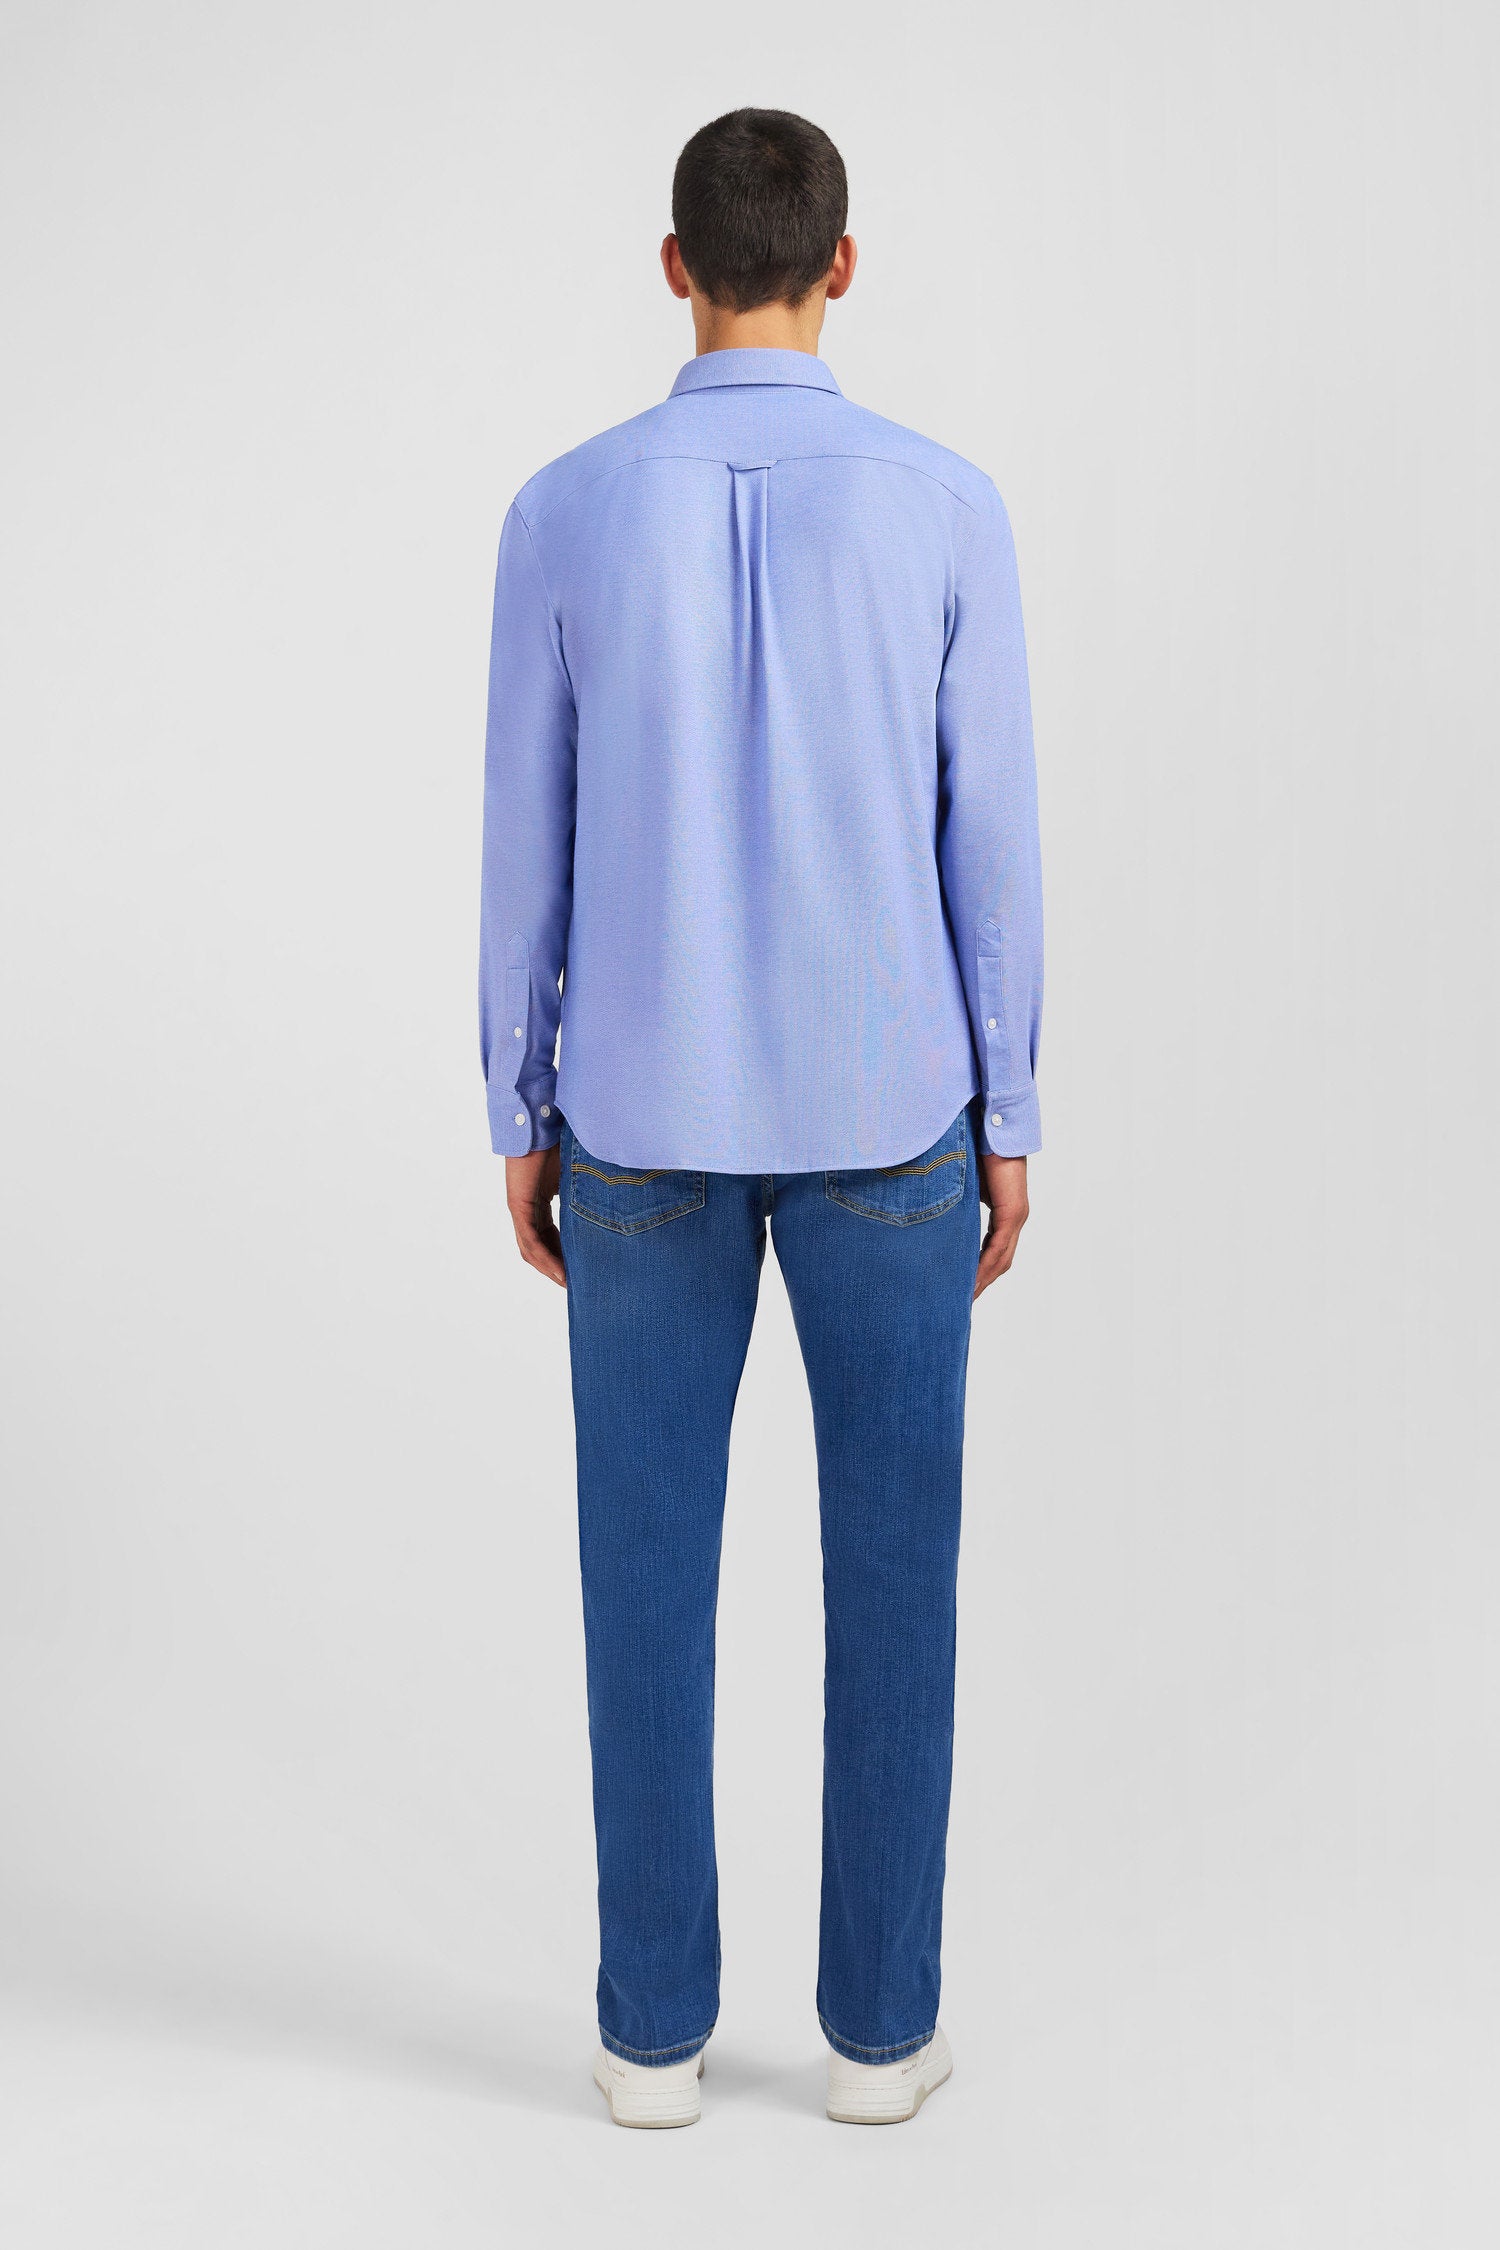 Blue Pinpoint Cotton Shirt_PPSHICHE0019_BLM17_03